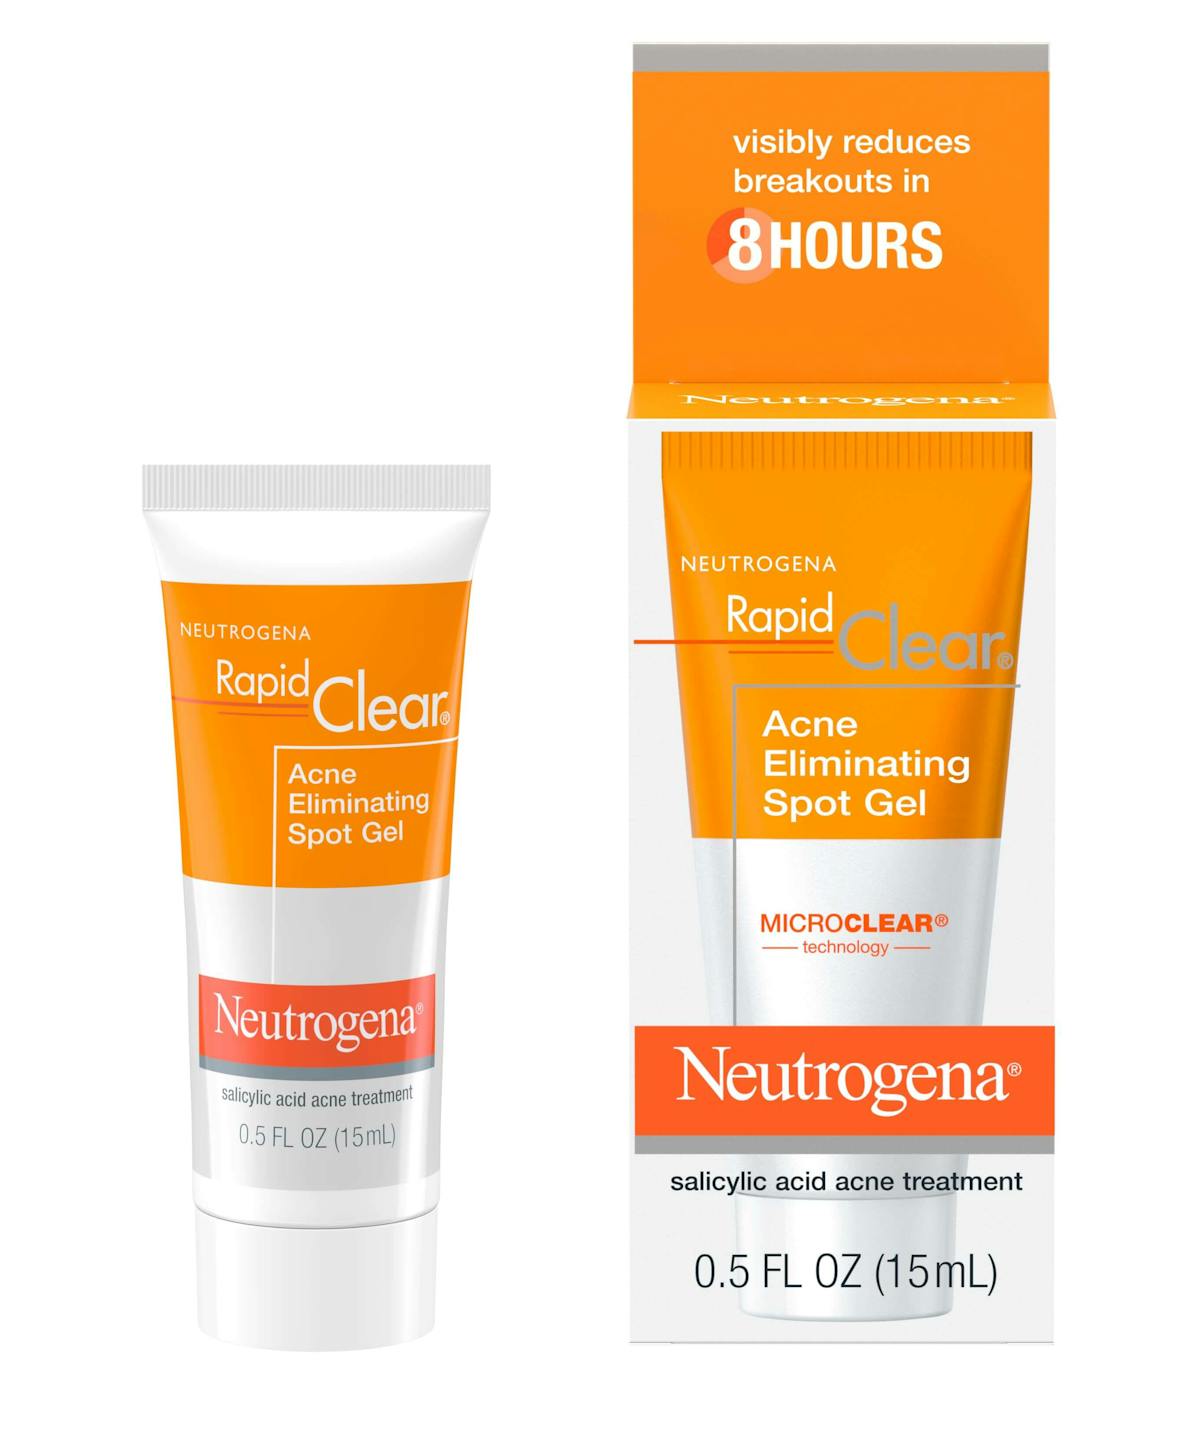 Neutrogena rapid clear stubborn acne spot gel how to use Acne Spot Gel Treatment With Salicylic Acid Witch Hazel Neutrogena